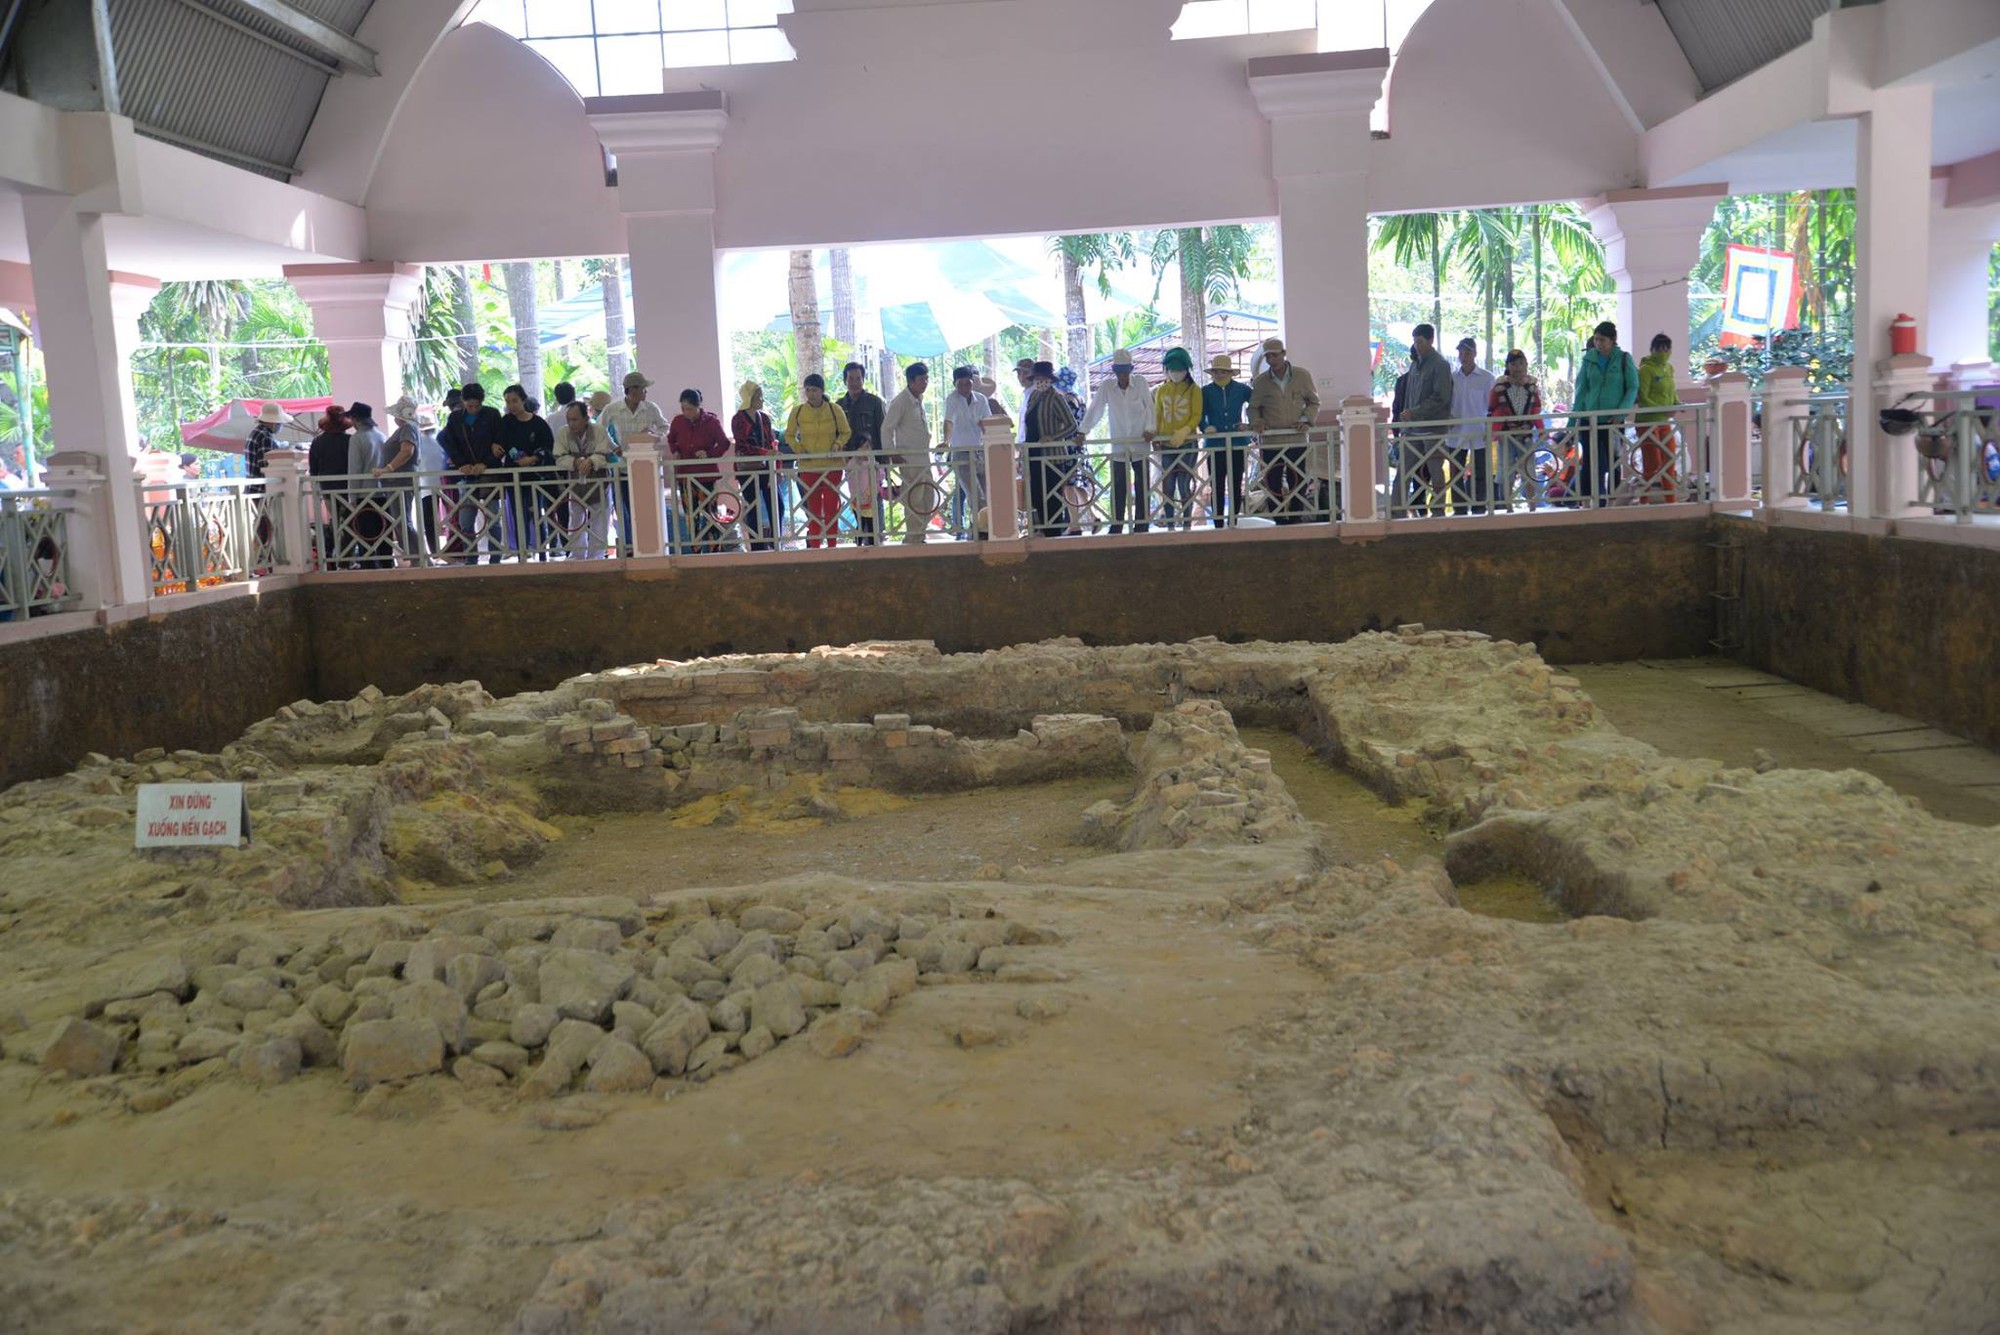 Ba cái gò đất ở một nơi của Đồng Tháp, khảo cổ đào lên phát lộ kiến trúc cổ, có phế tích tháp 10 tầng - Ảnh 5.